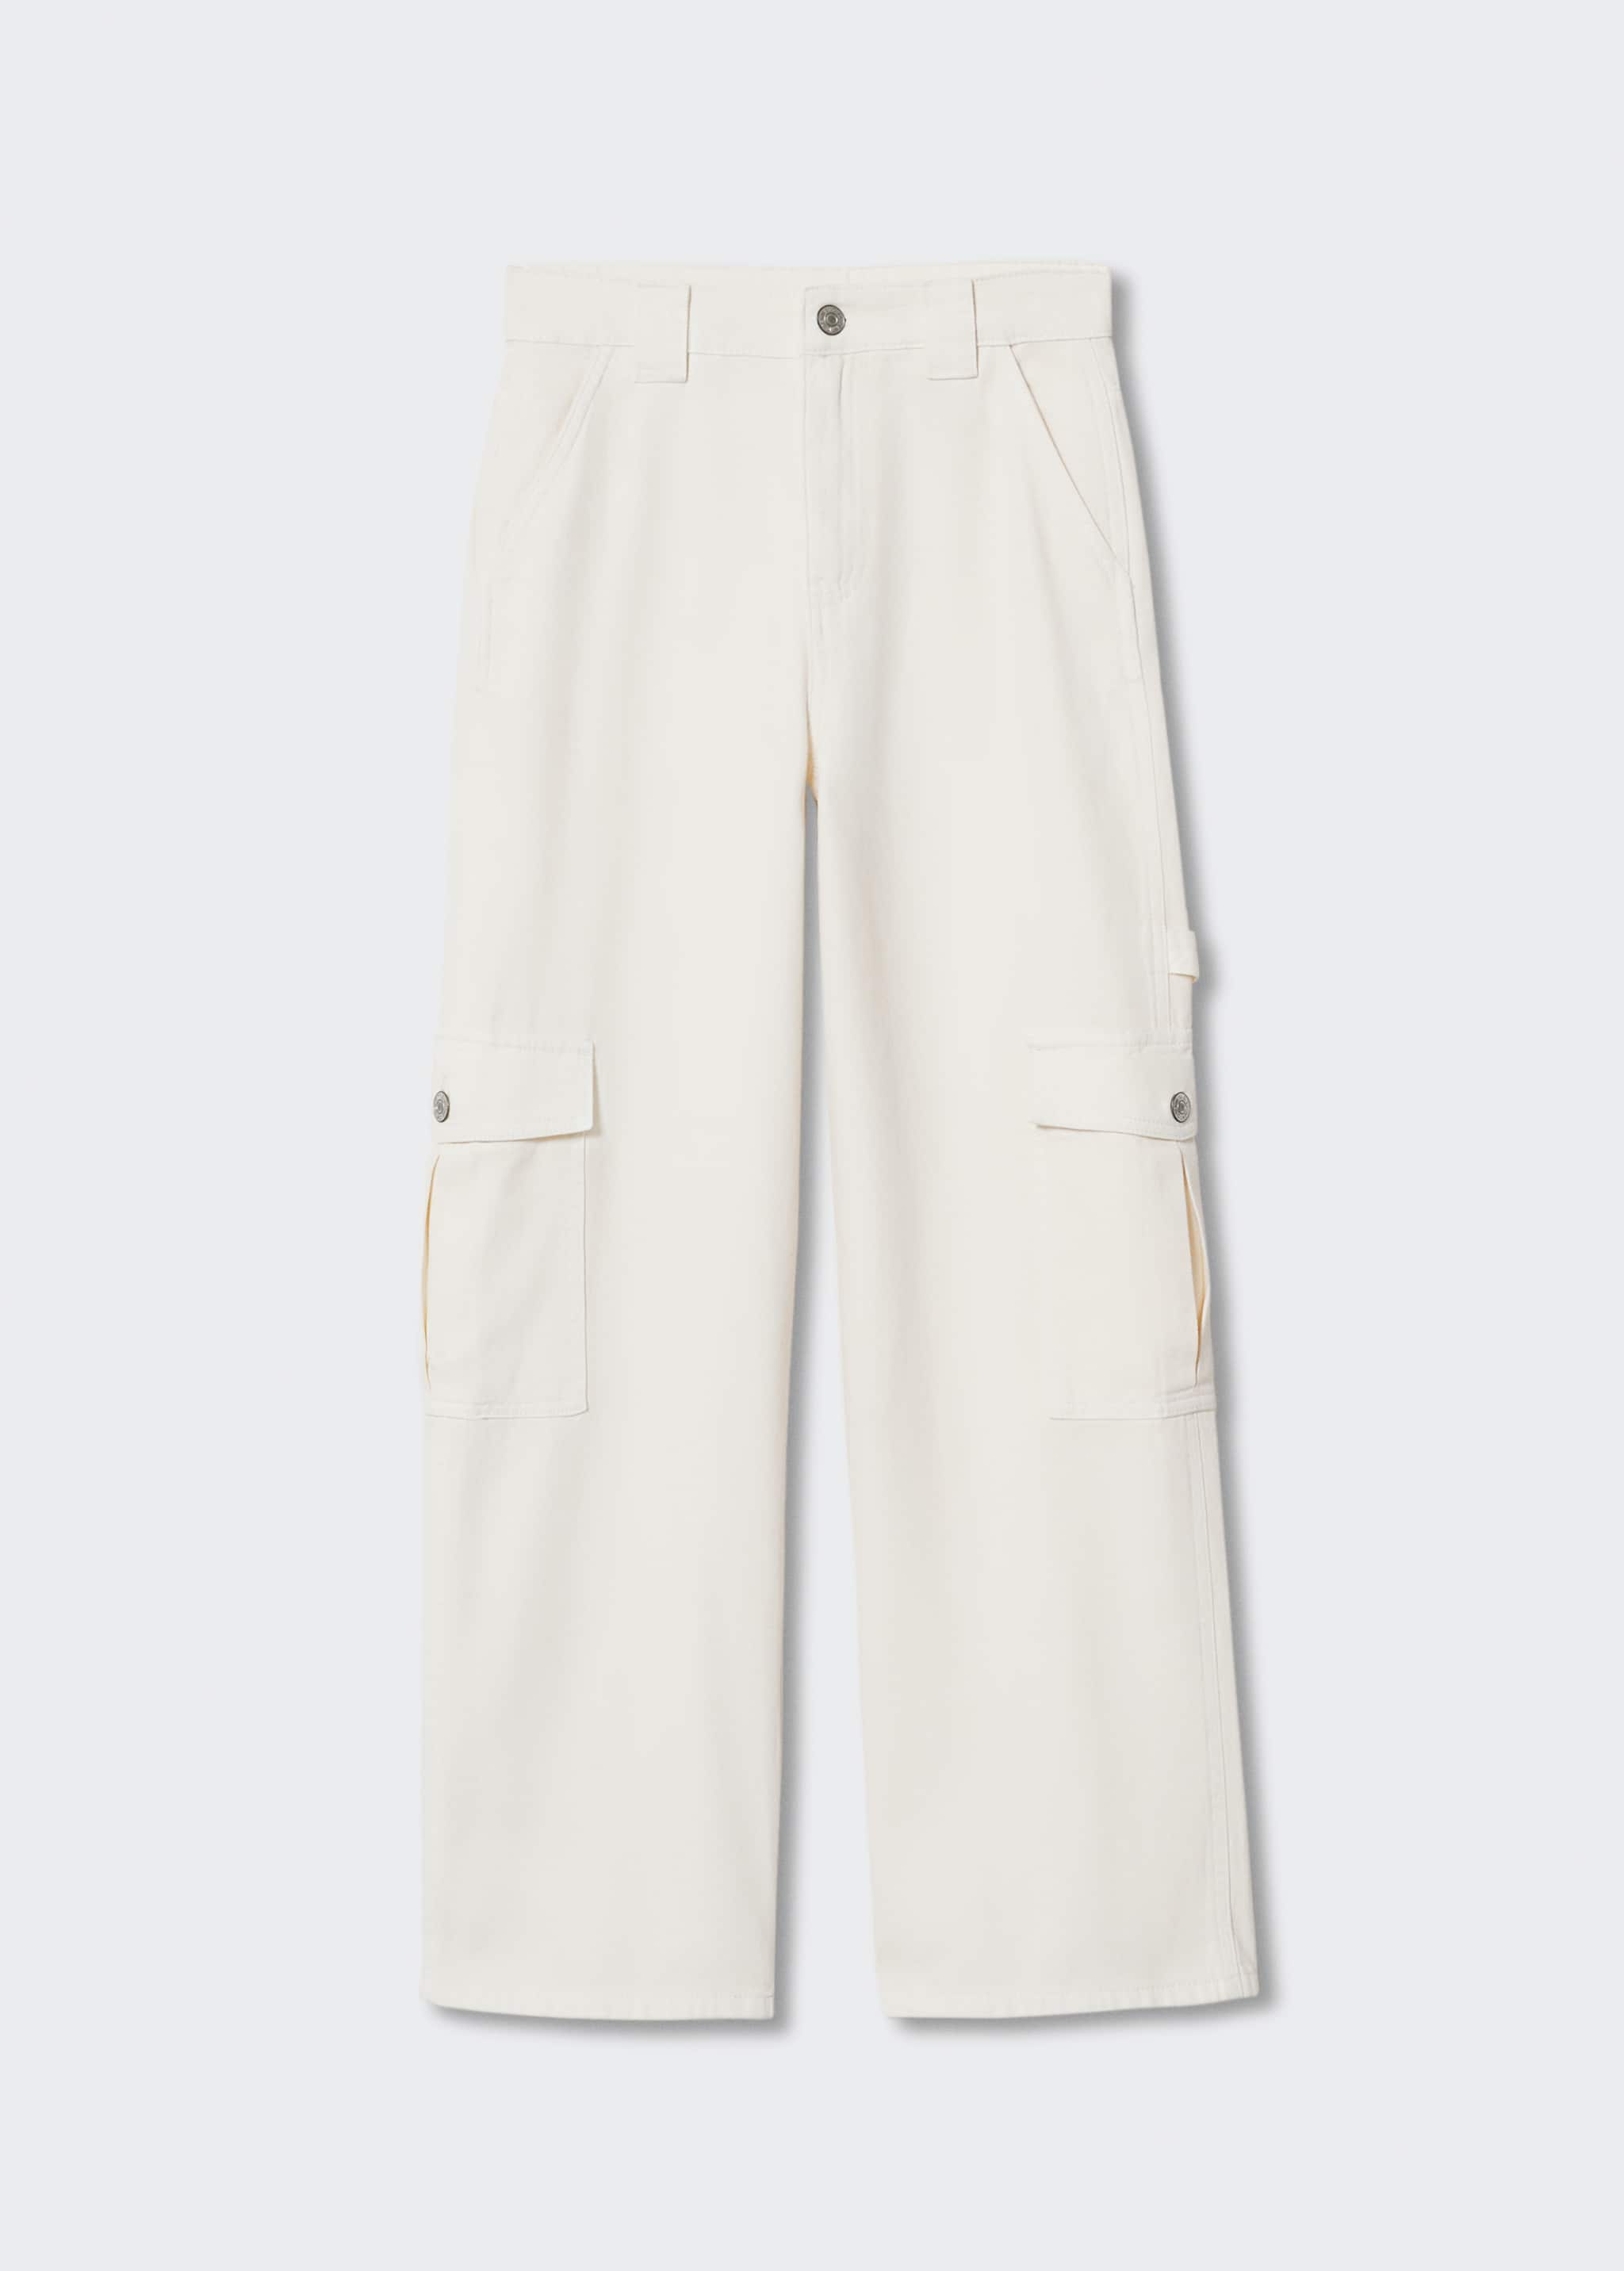 Bavlněné kalhoty s kapsami - Zboží bez modelu